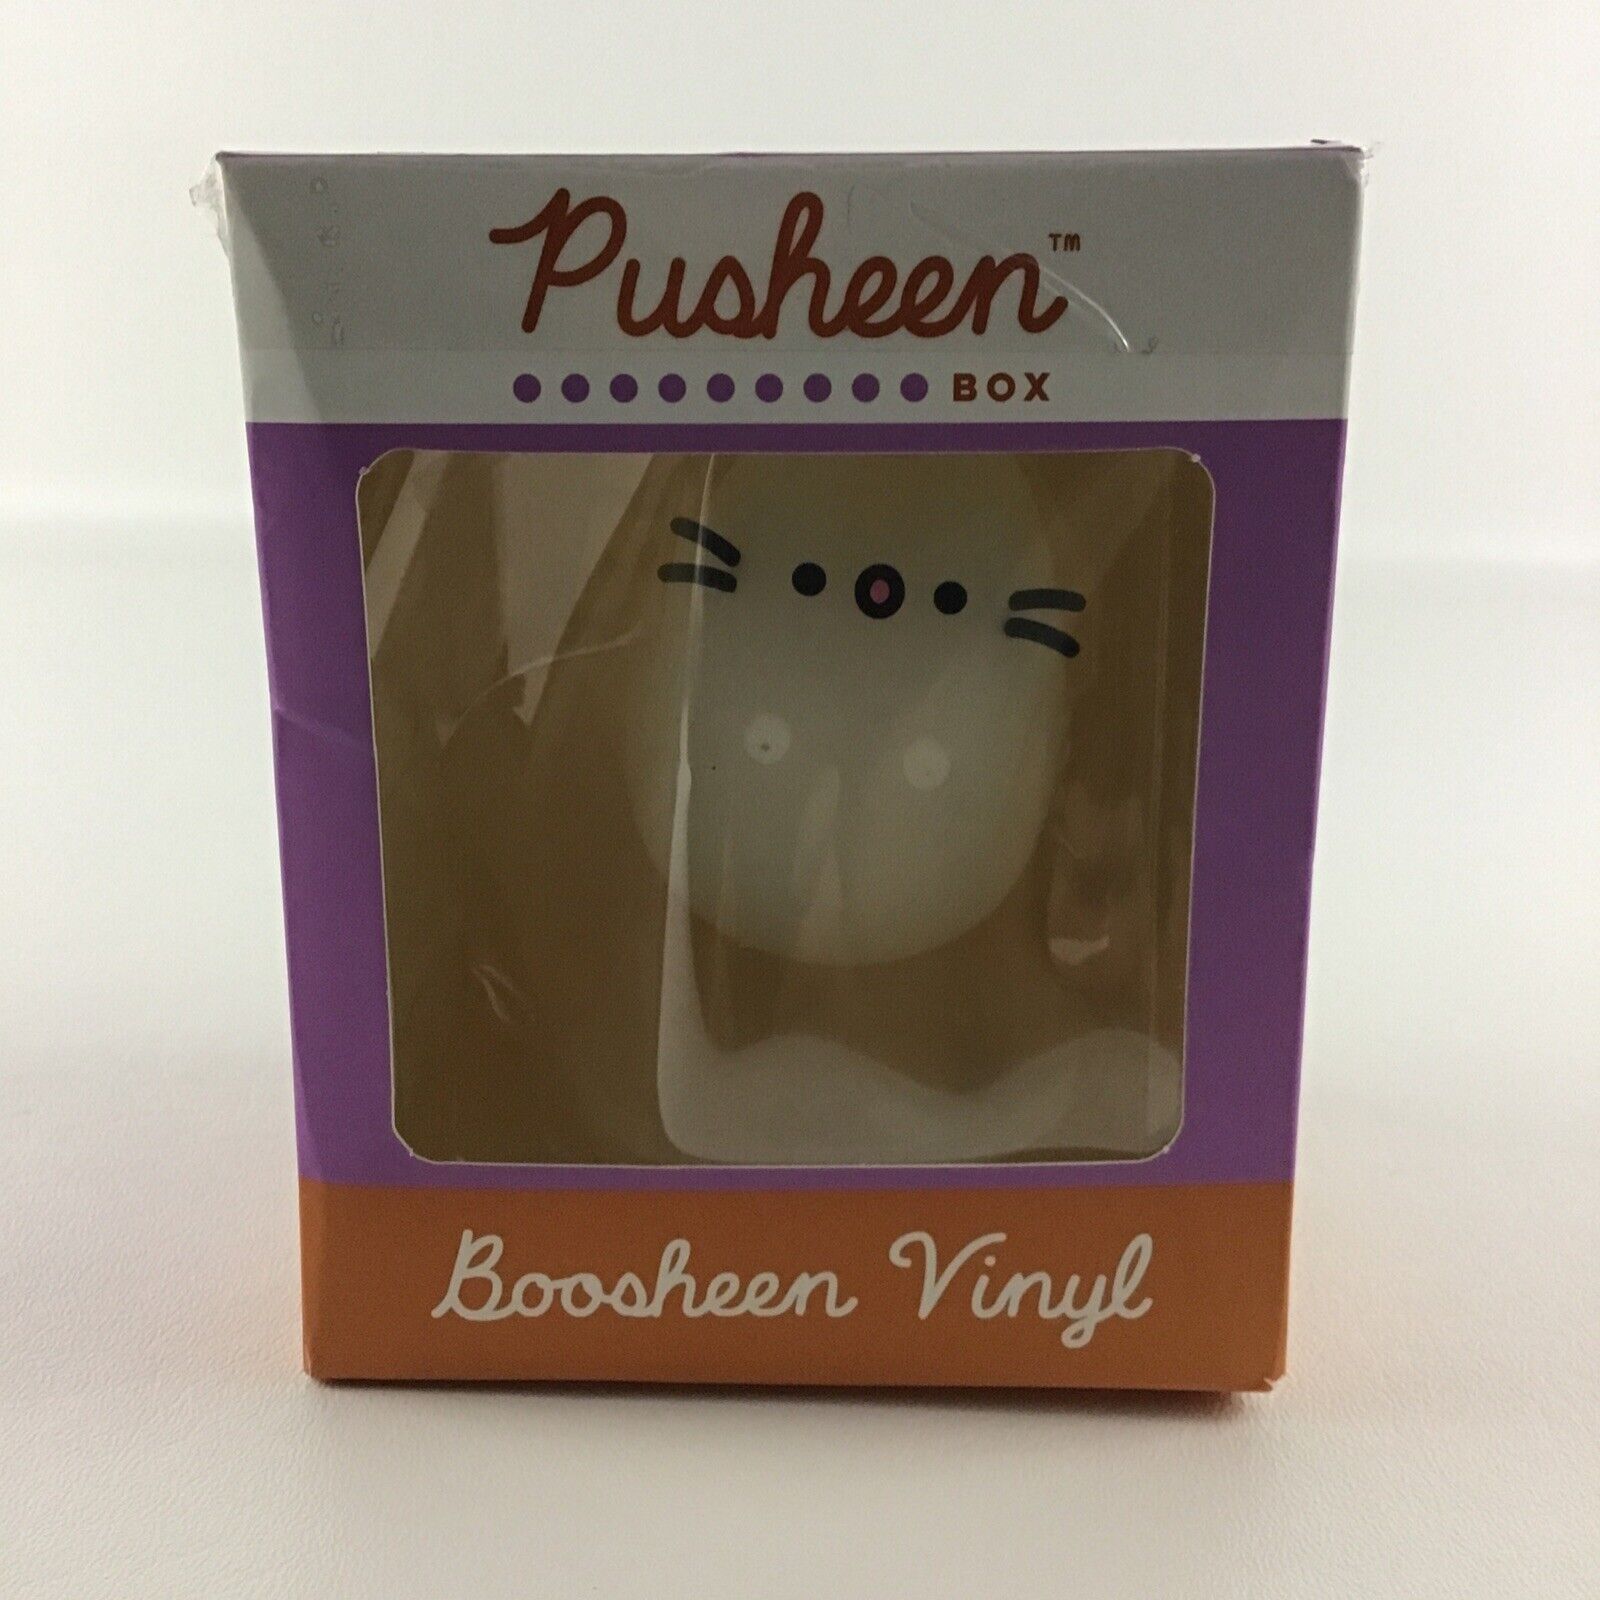 Culturefly Pusheen Box Exclusive Boosheen Vinyl Figure Ghost Collectible New 